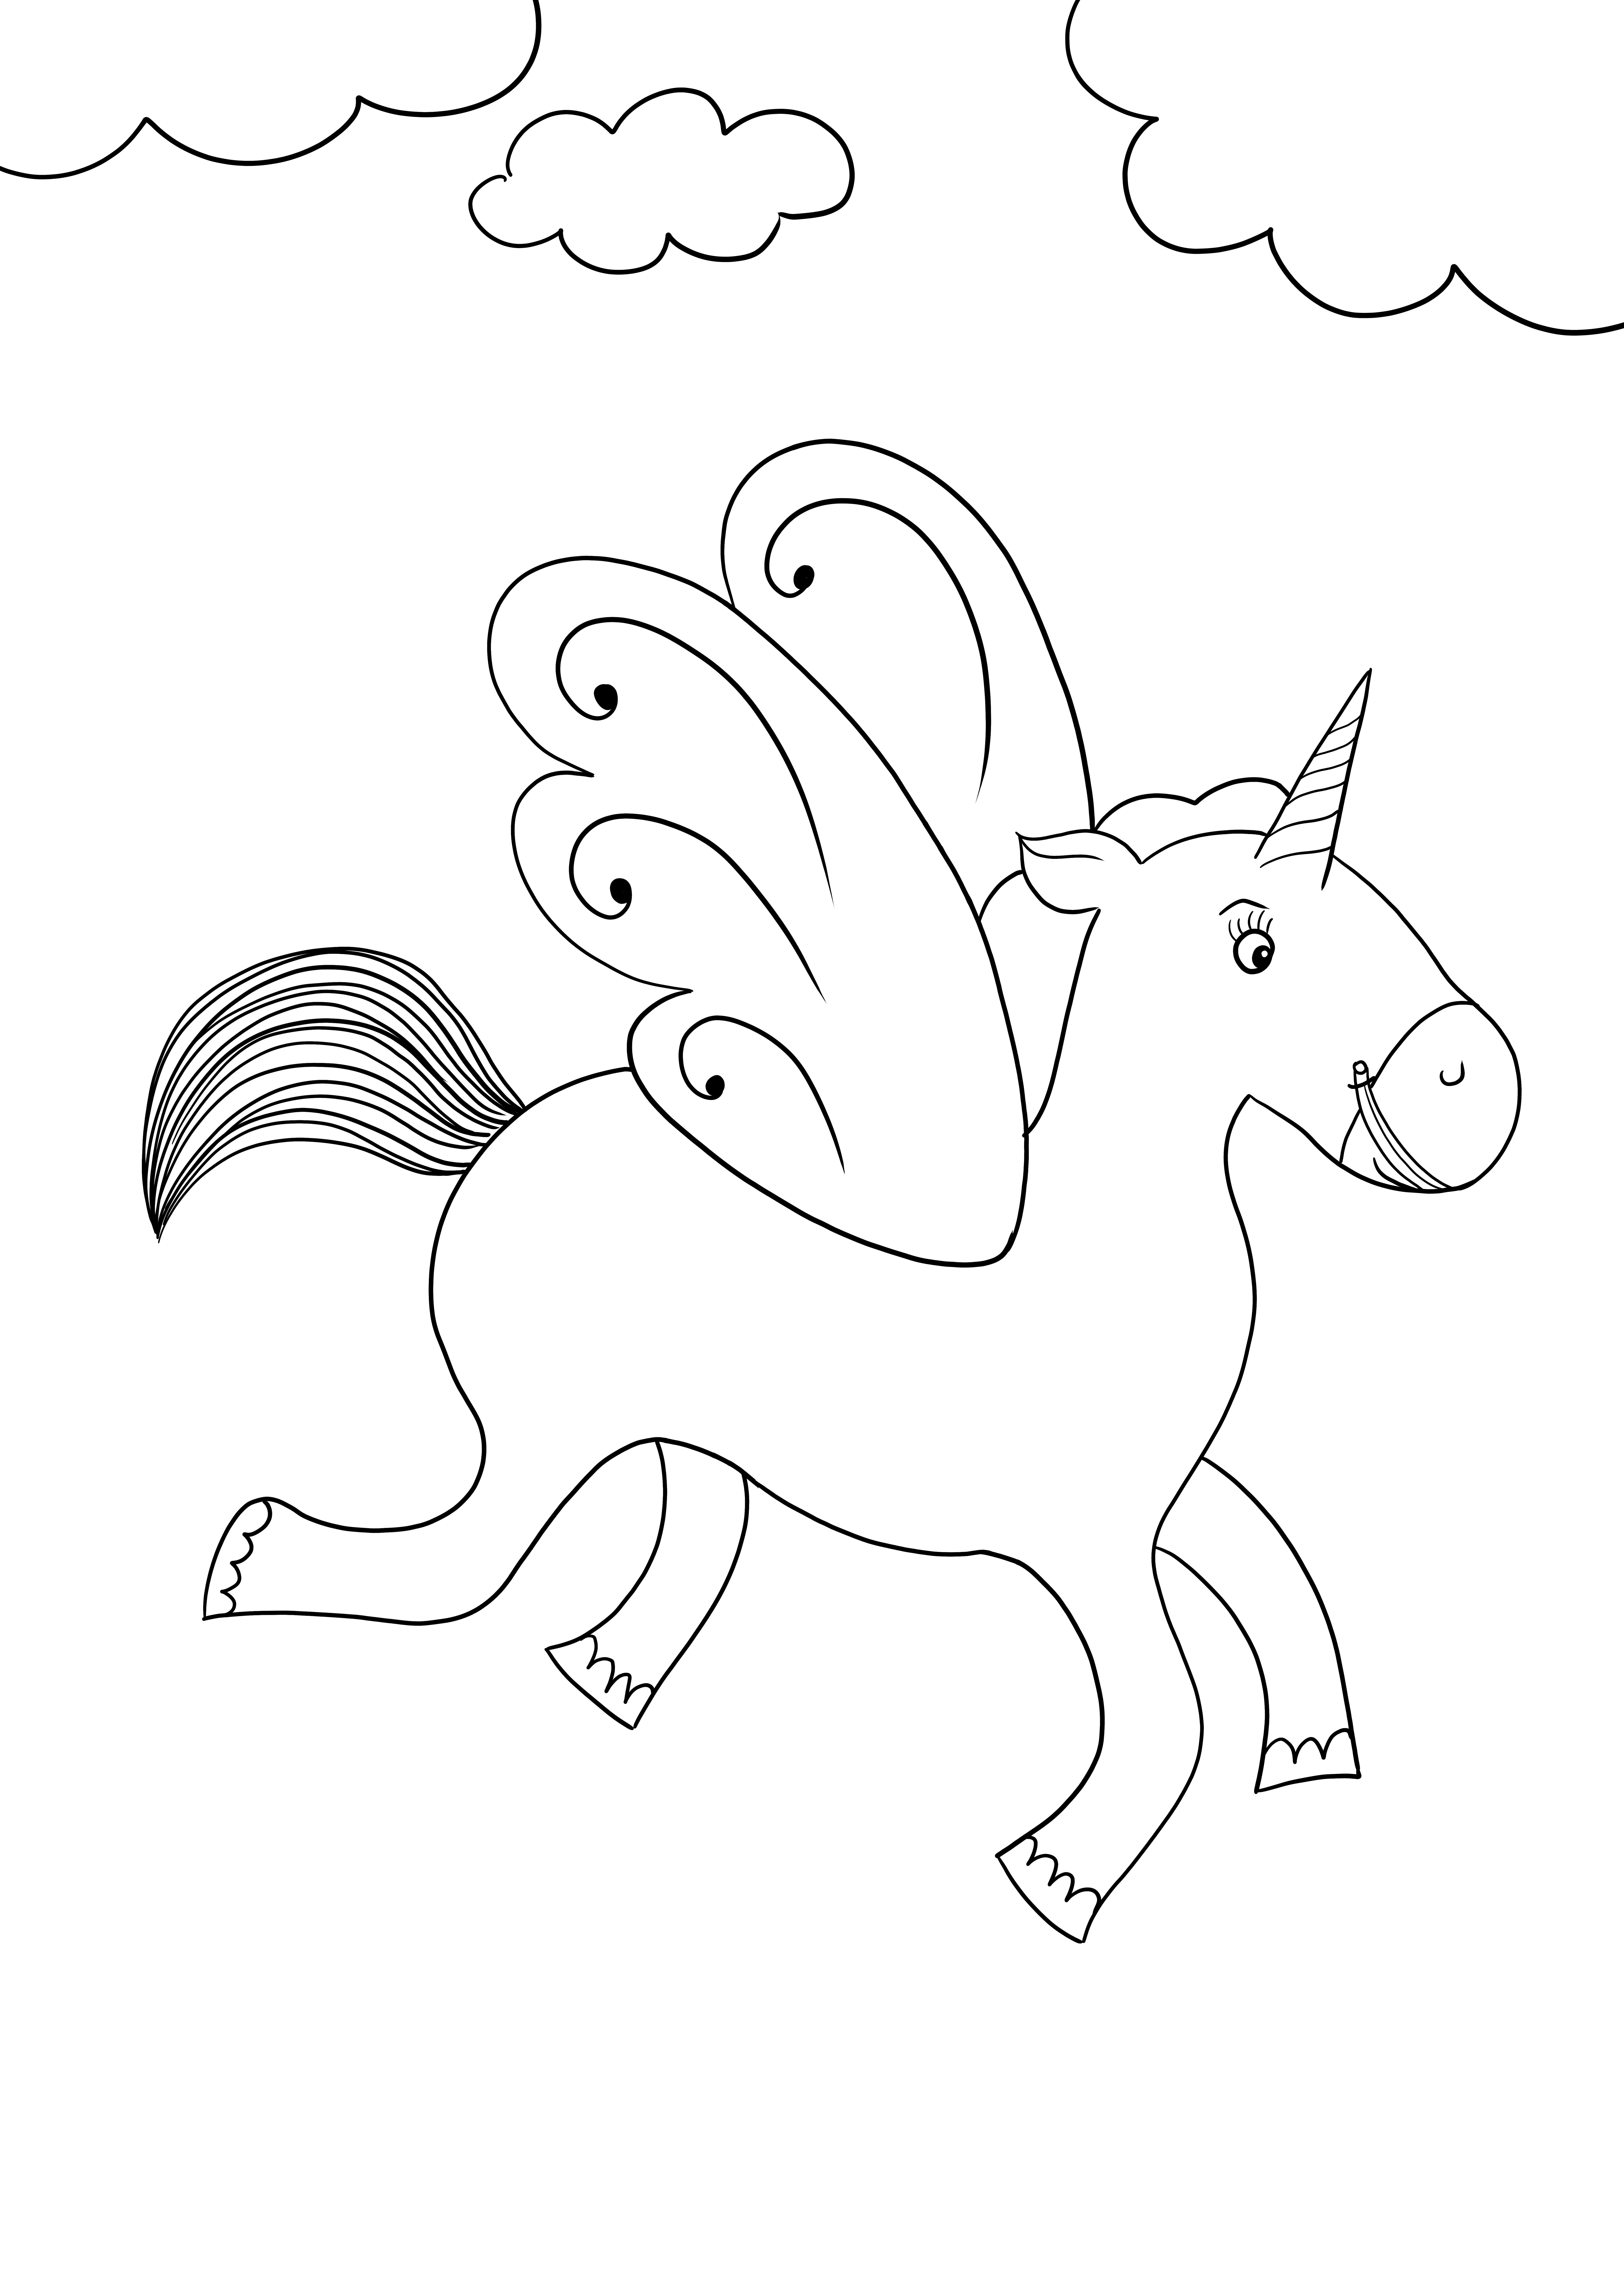 Semplice immagine da colorare di un download gratuito di unicorno volante